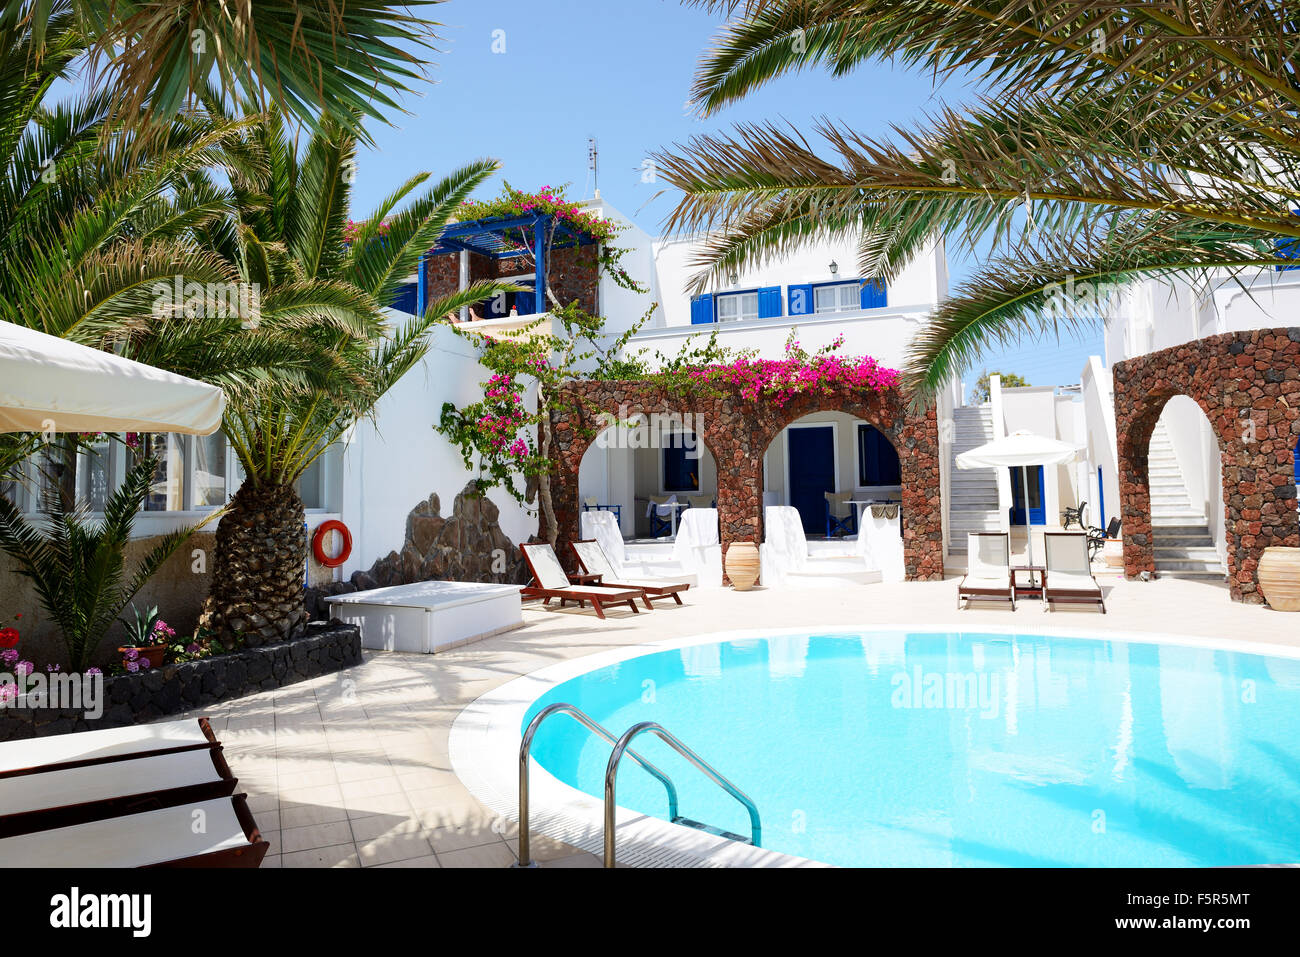 Swimmingpool des Hotels im traditionellen griechischen Stil, Santorin, Griechenland Stockfoto